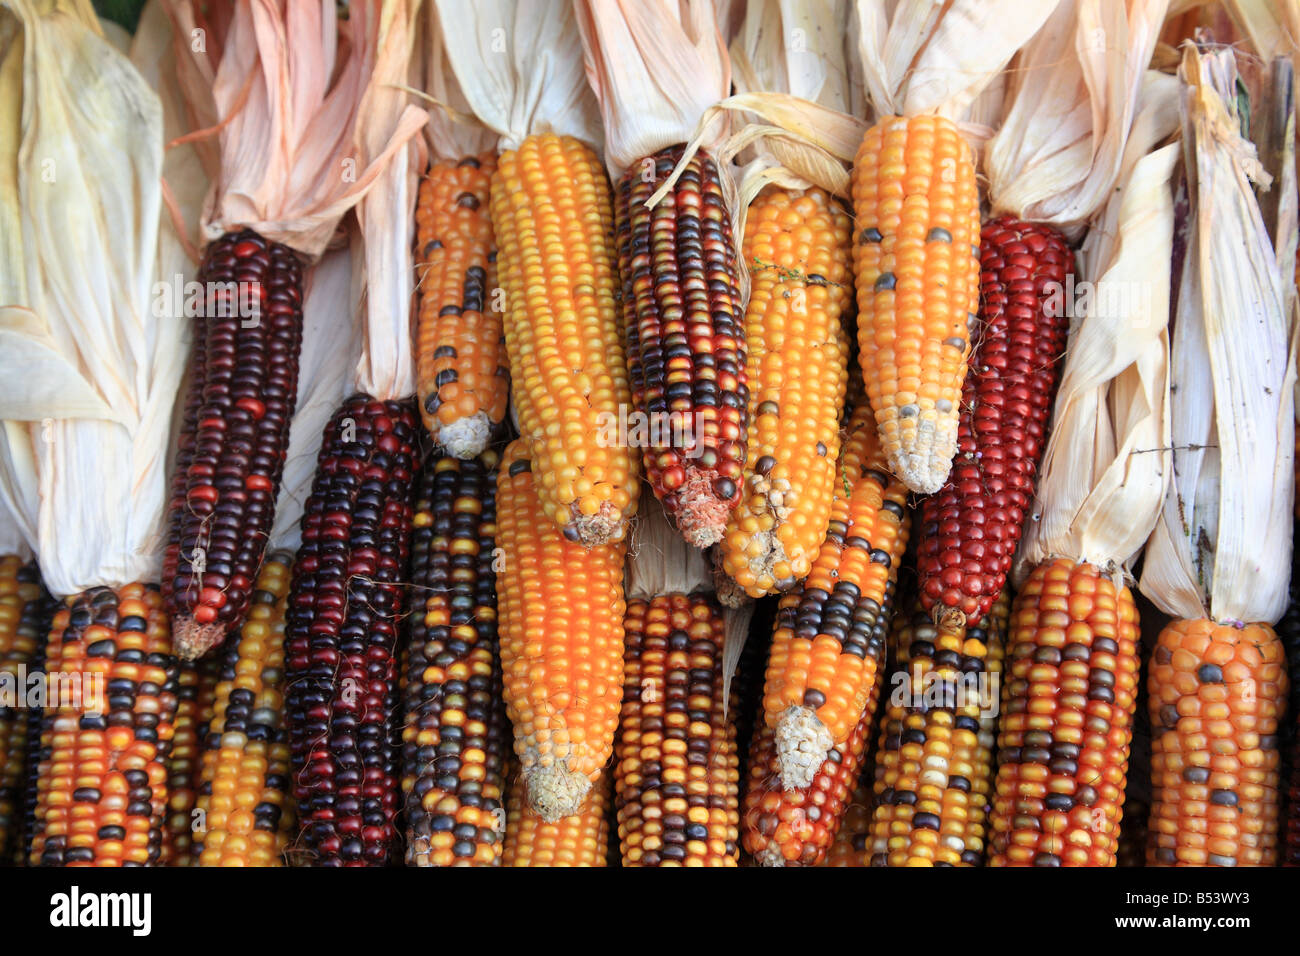 Coloured colored corns Stock Photo